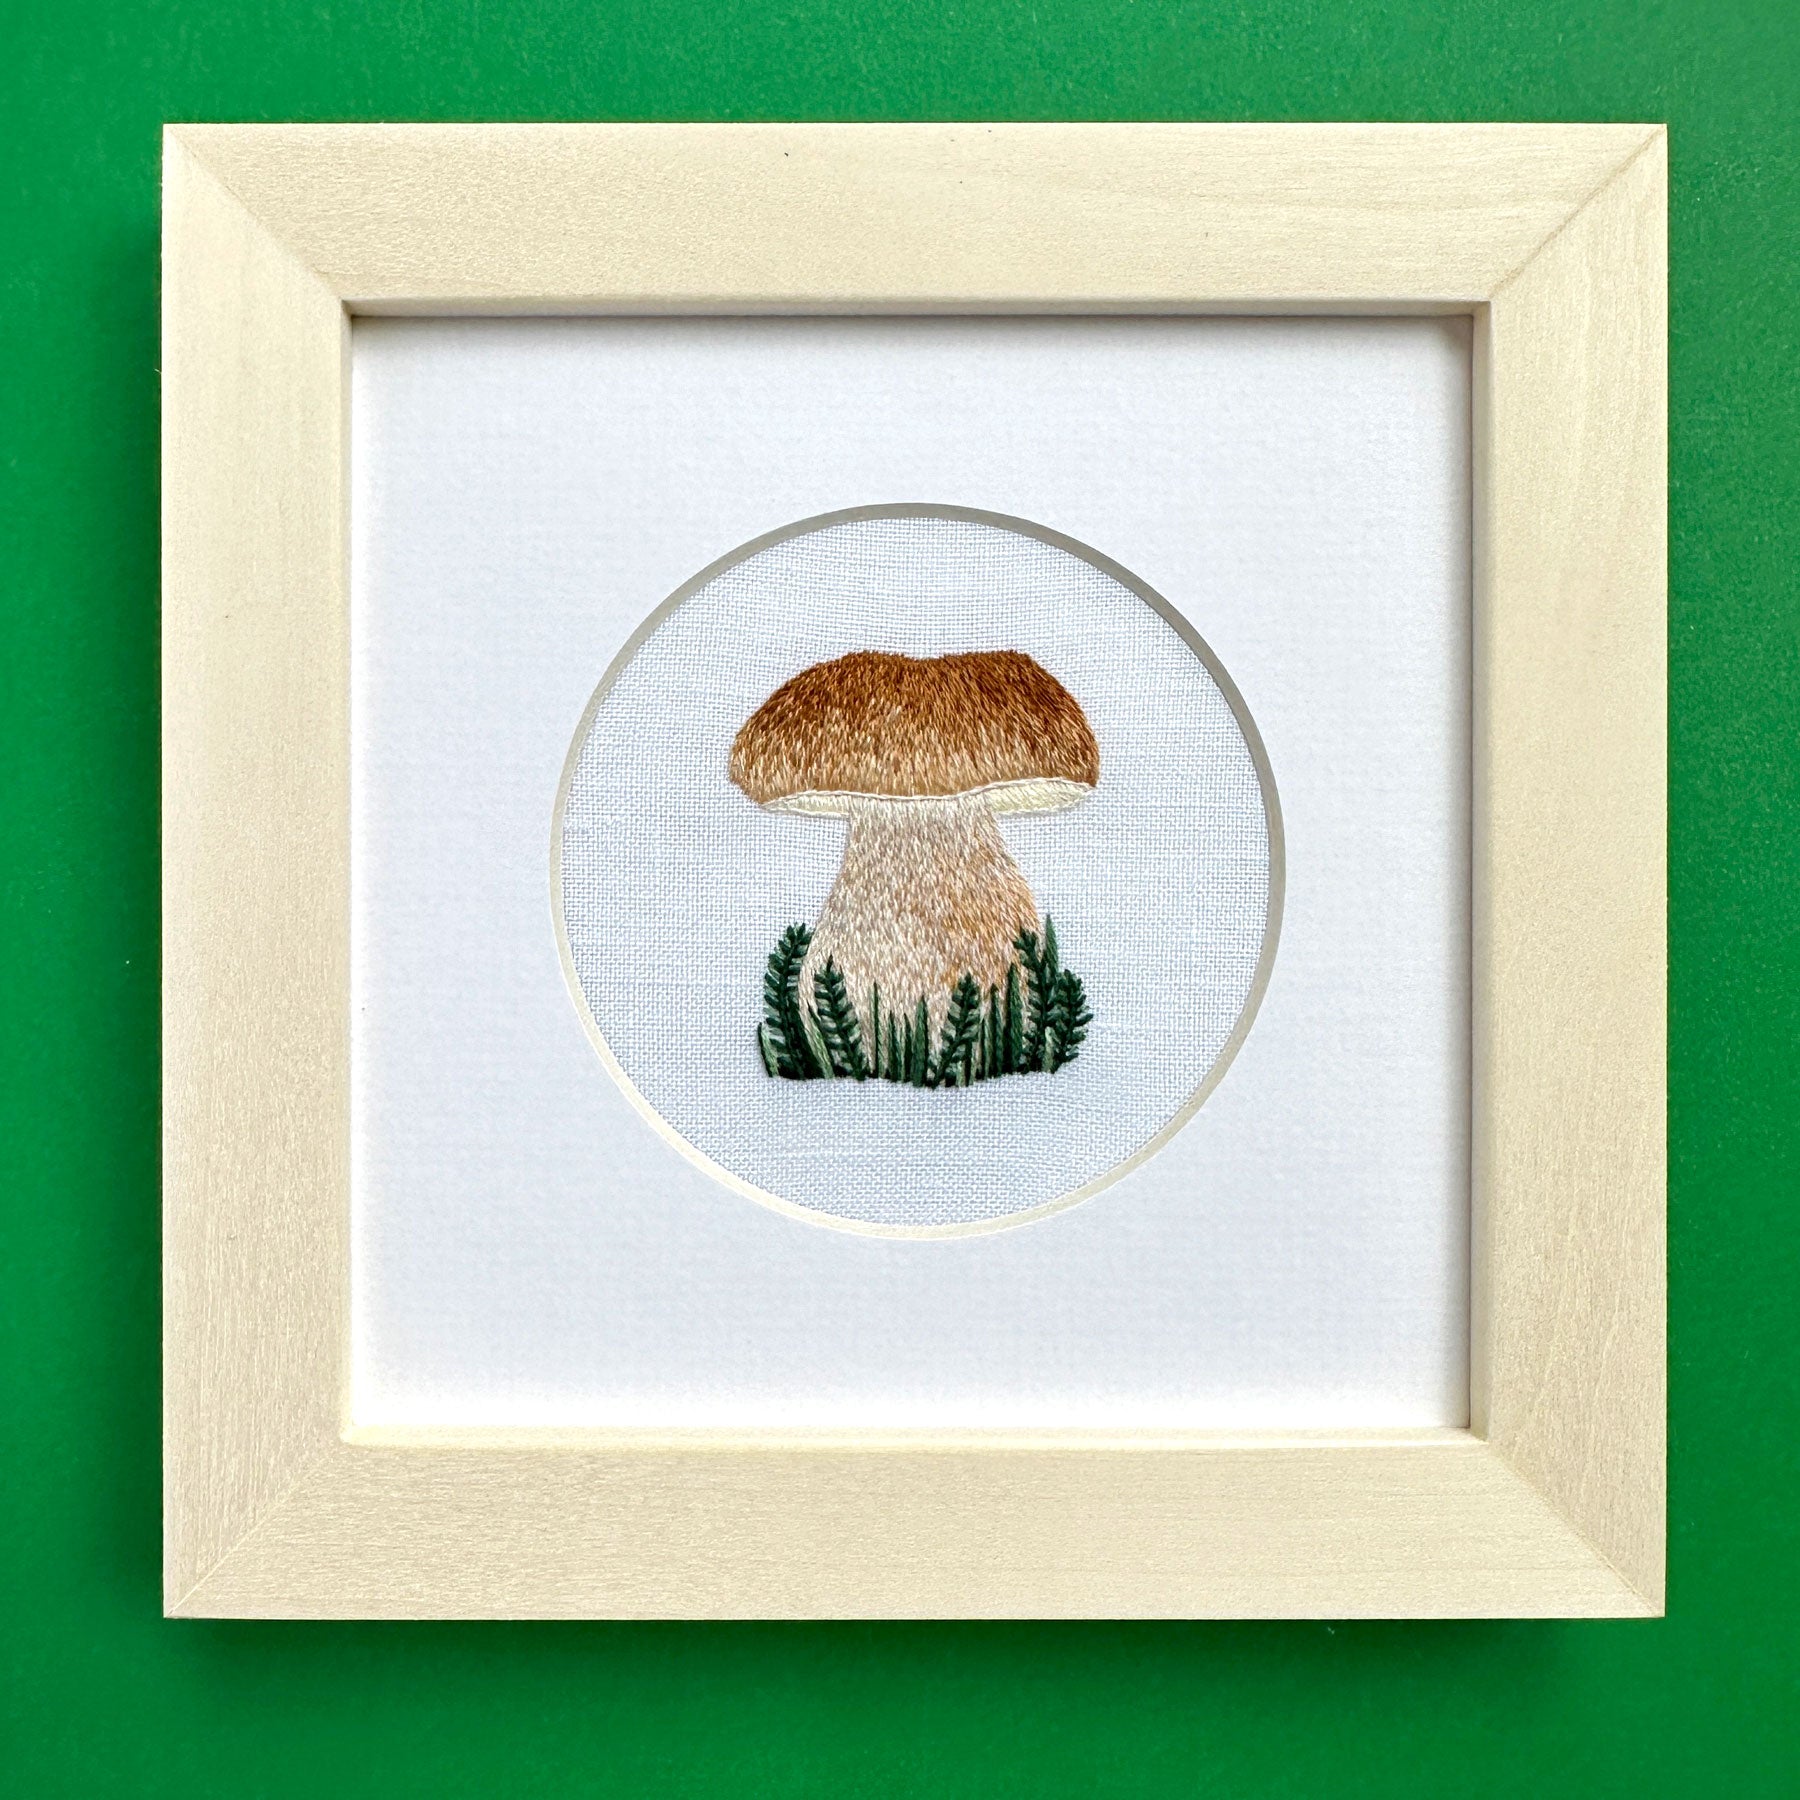 Porcini Mushroom on White Linen Hand Embroidered Art